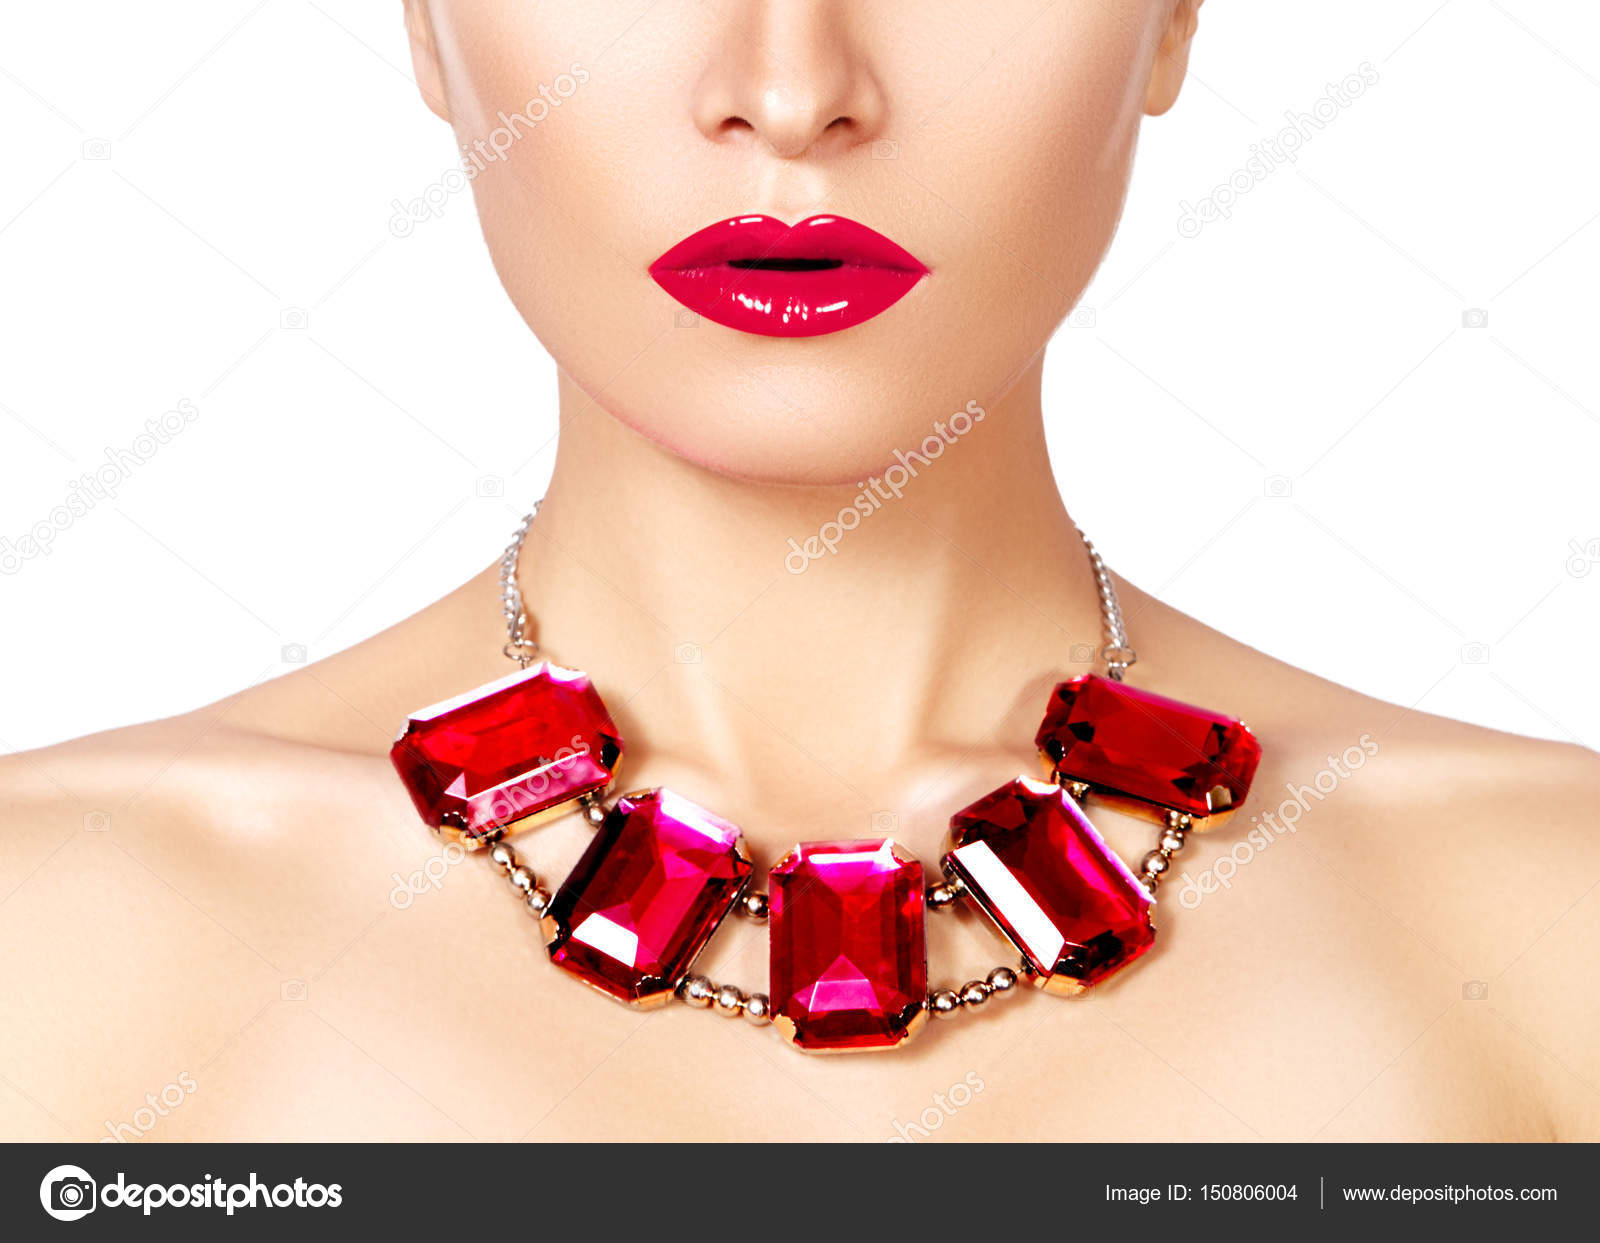 Women's Jewelry, Fashion Jewelry for Women